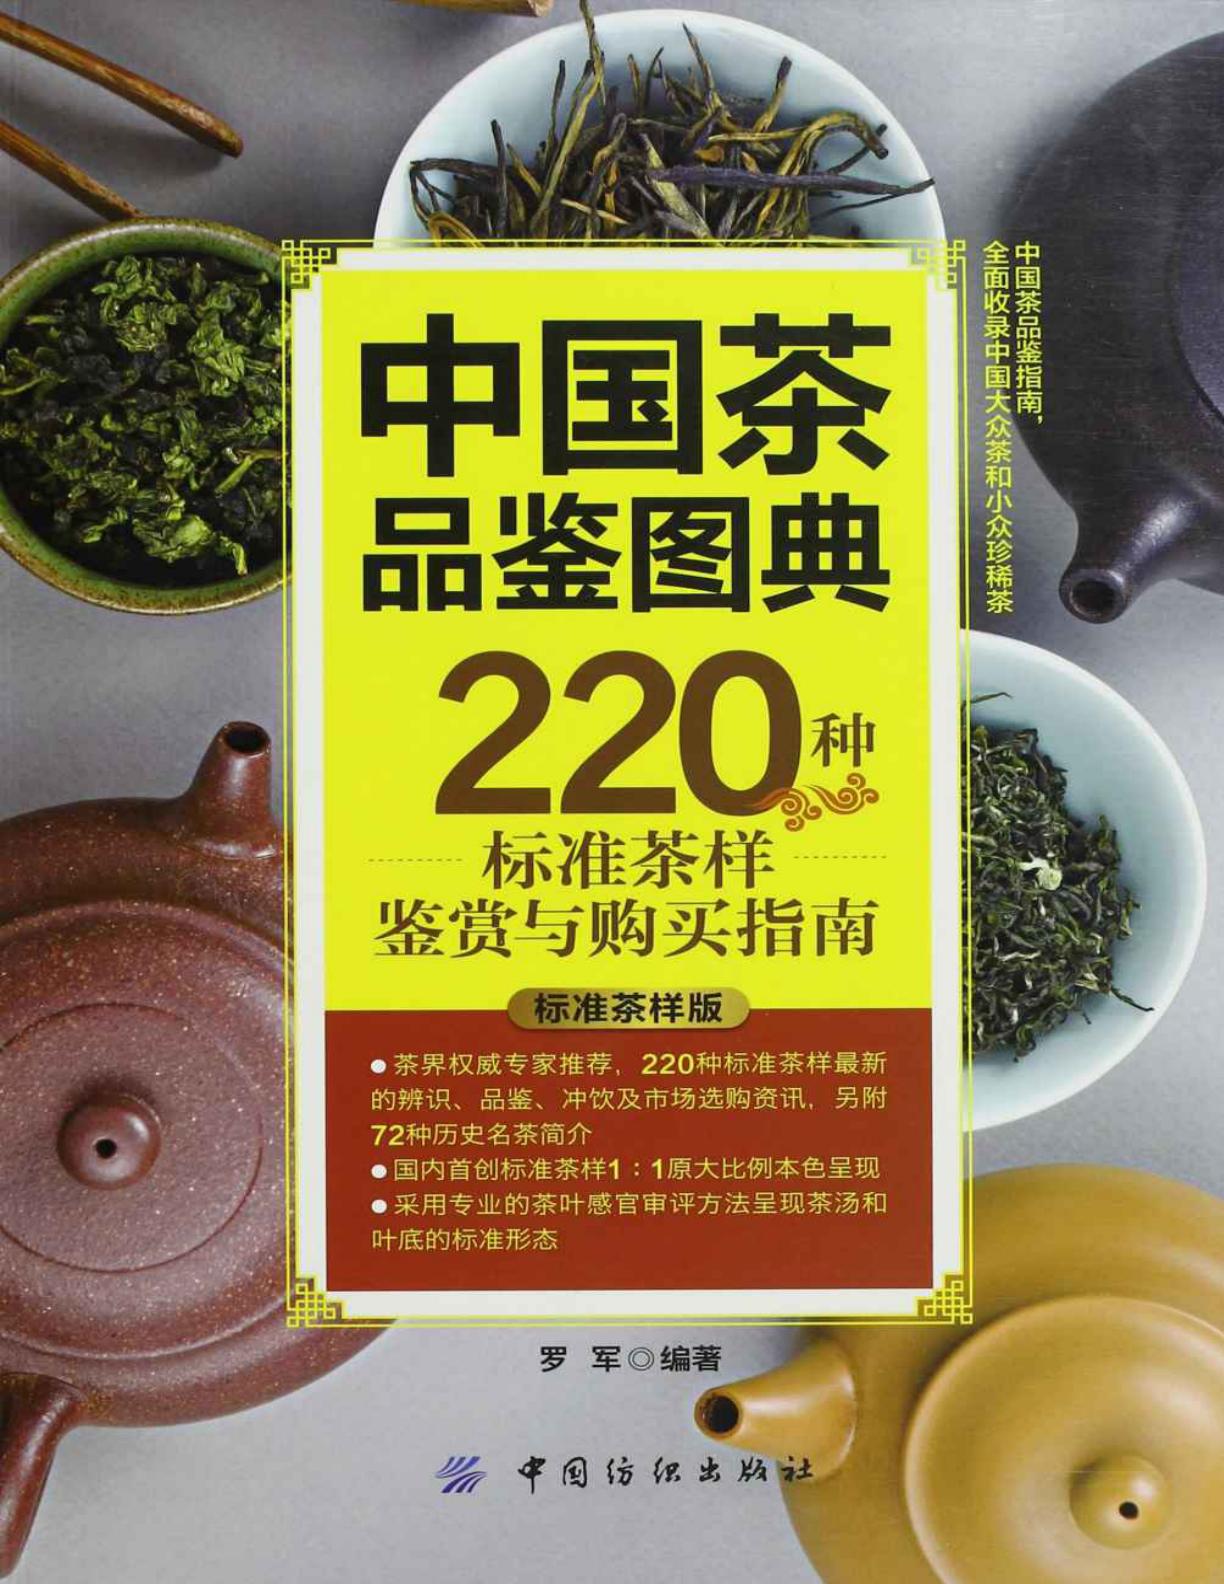 图书 | 中国茶品鉴图典：220种标准茶样鉴赏与购买指南PDF电子书免费分享下载-青椰小屋